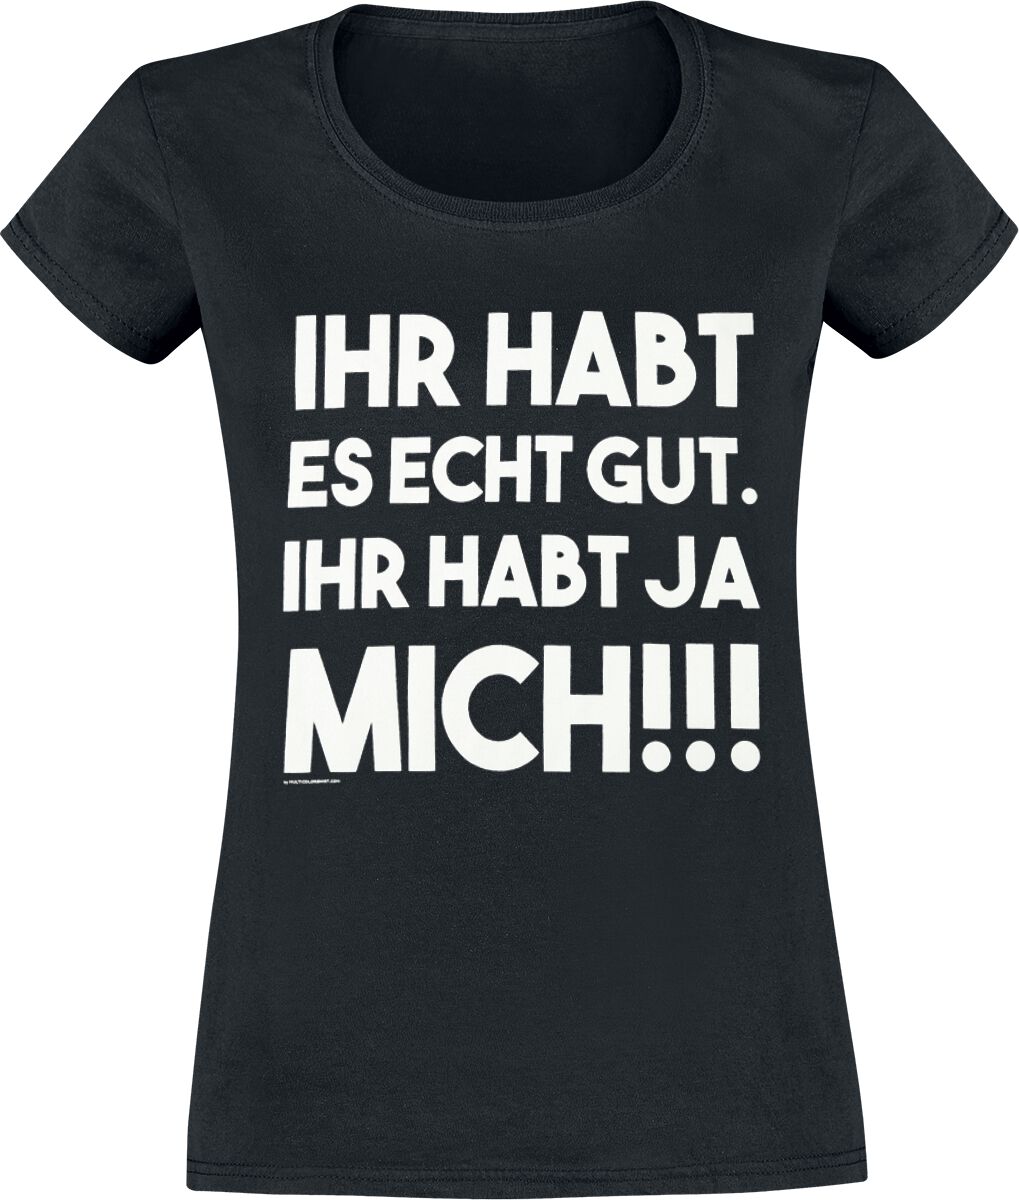 Sprüche T-Shirt - Ihr habt es echt gut - S bis XXL - für Damen - Größe M - schwarz